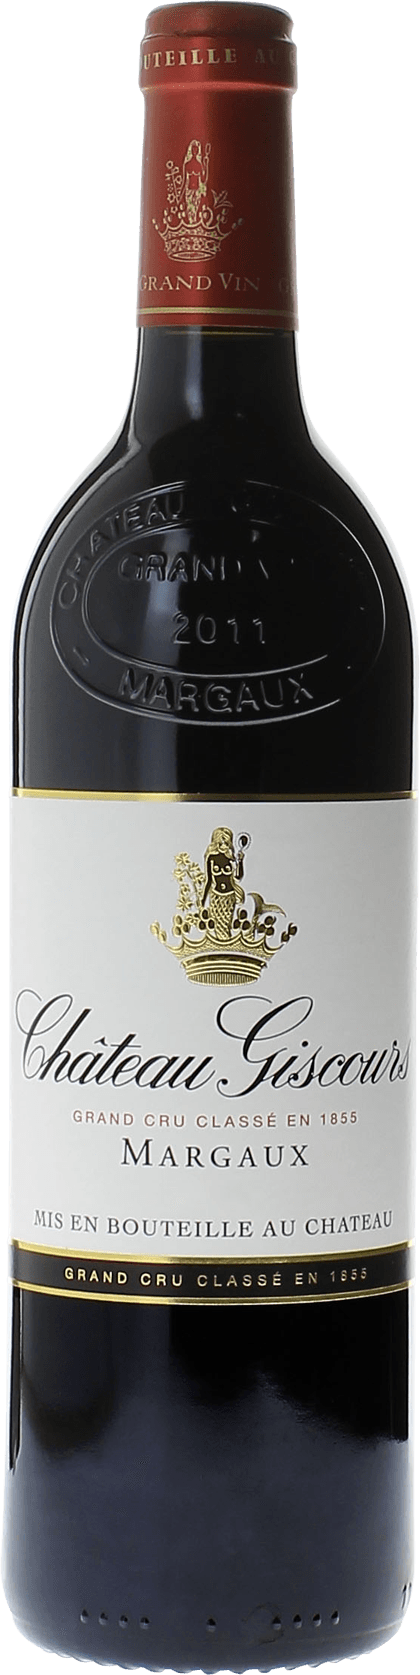 Giscours 1996 3me Grand cru class Margaux, Bordeaux rouge